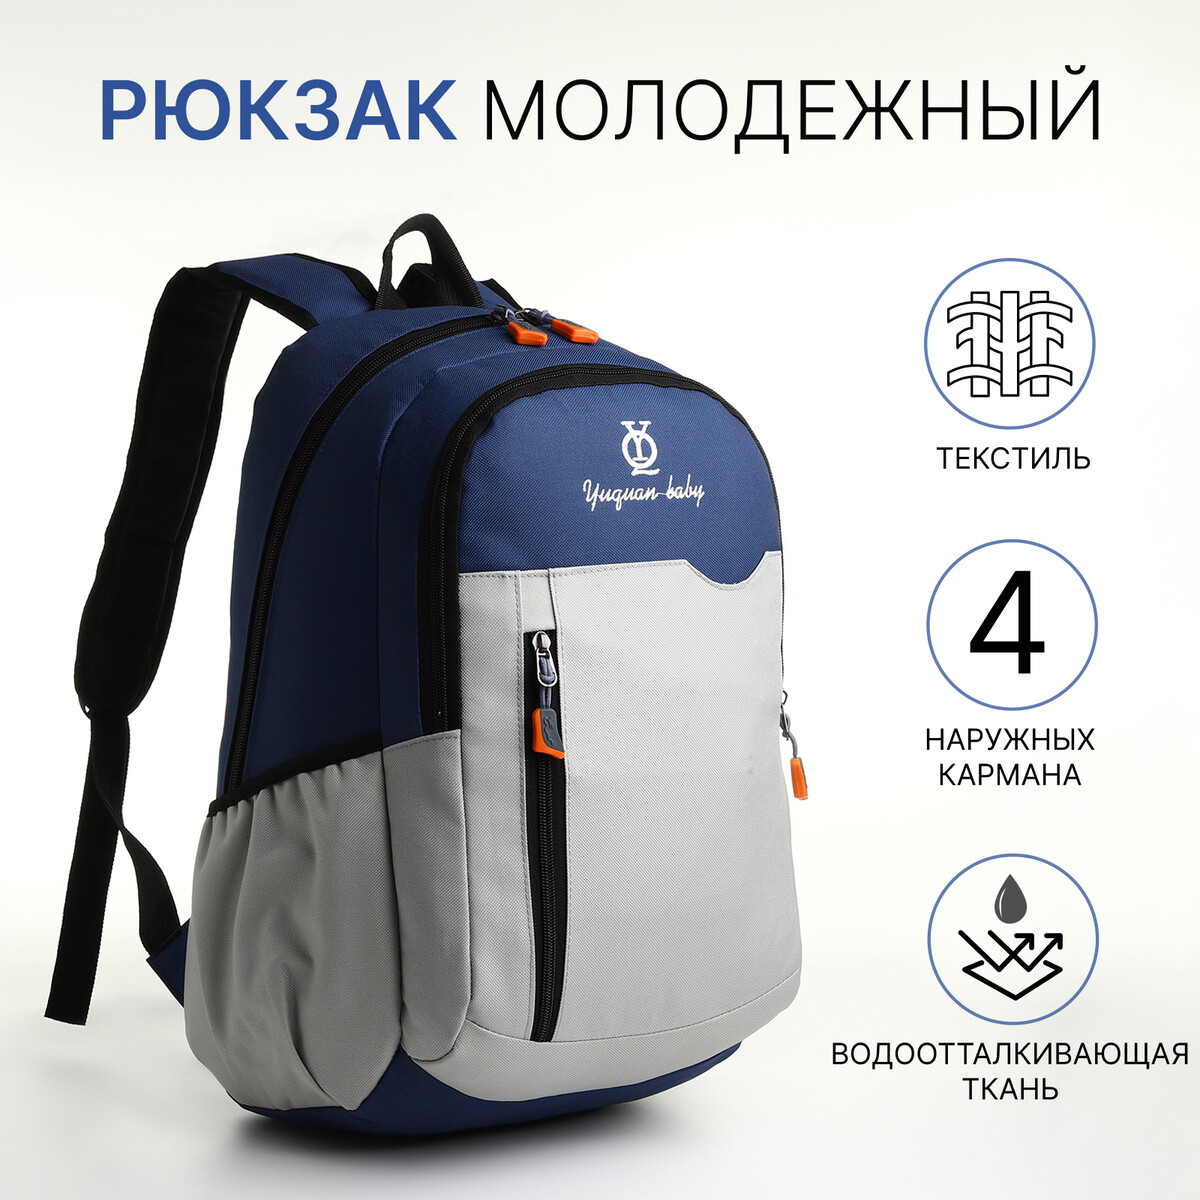 Рюкзак школьный, 2 отдела на молнии, 3 кармана, цвет серый/синий рюкзак молодежный из текстиля 2 отдела 4 кармана серый